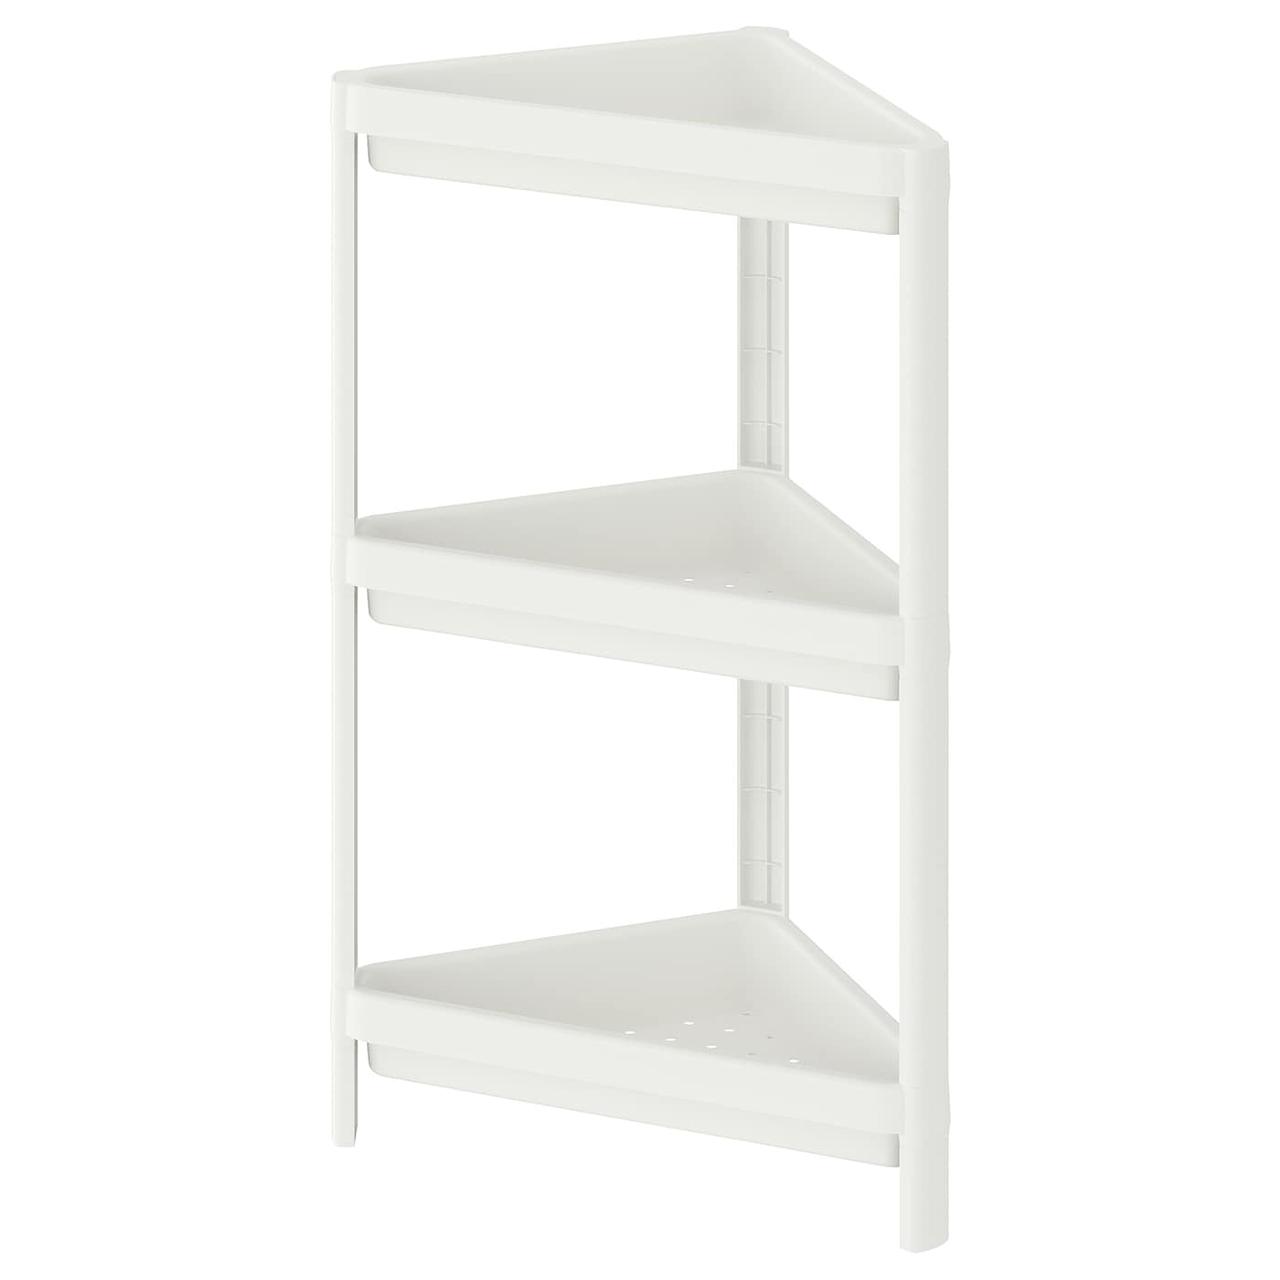 IKEA/ ВЕСКЕН Стеллаж угловой, белый33x33x71 см